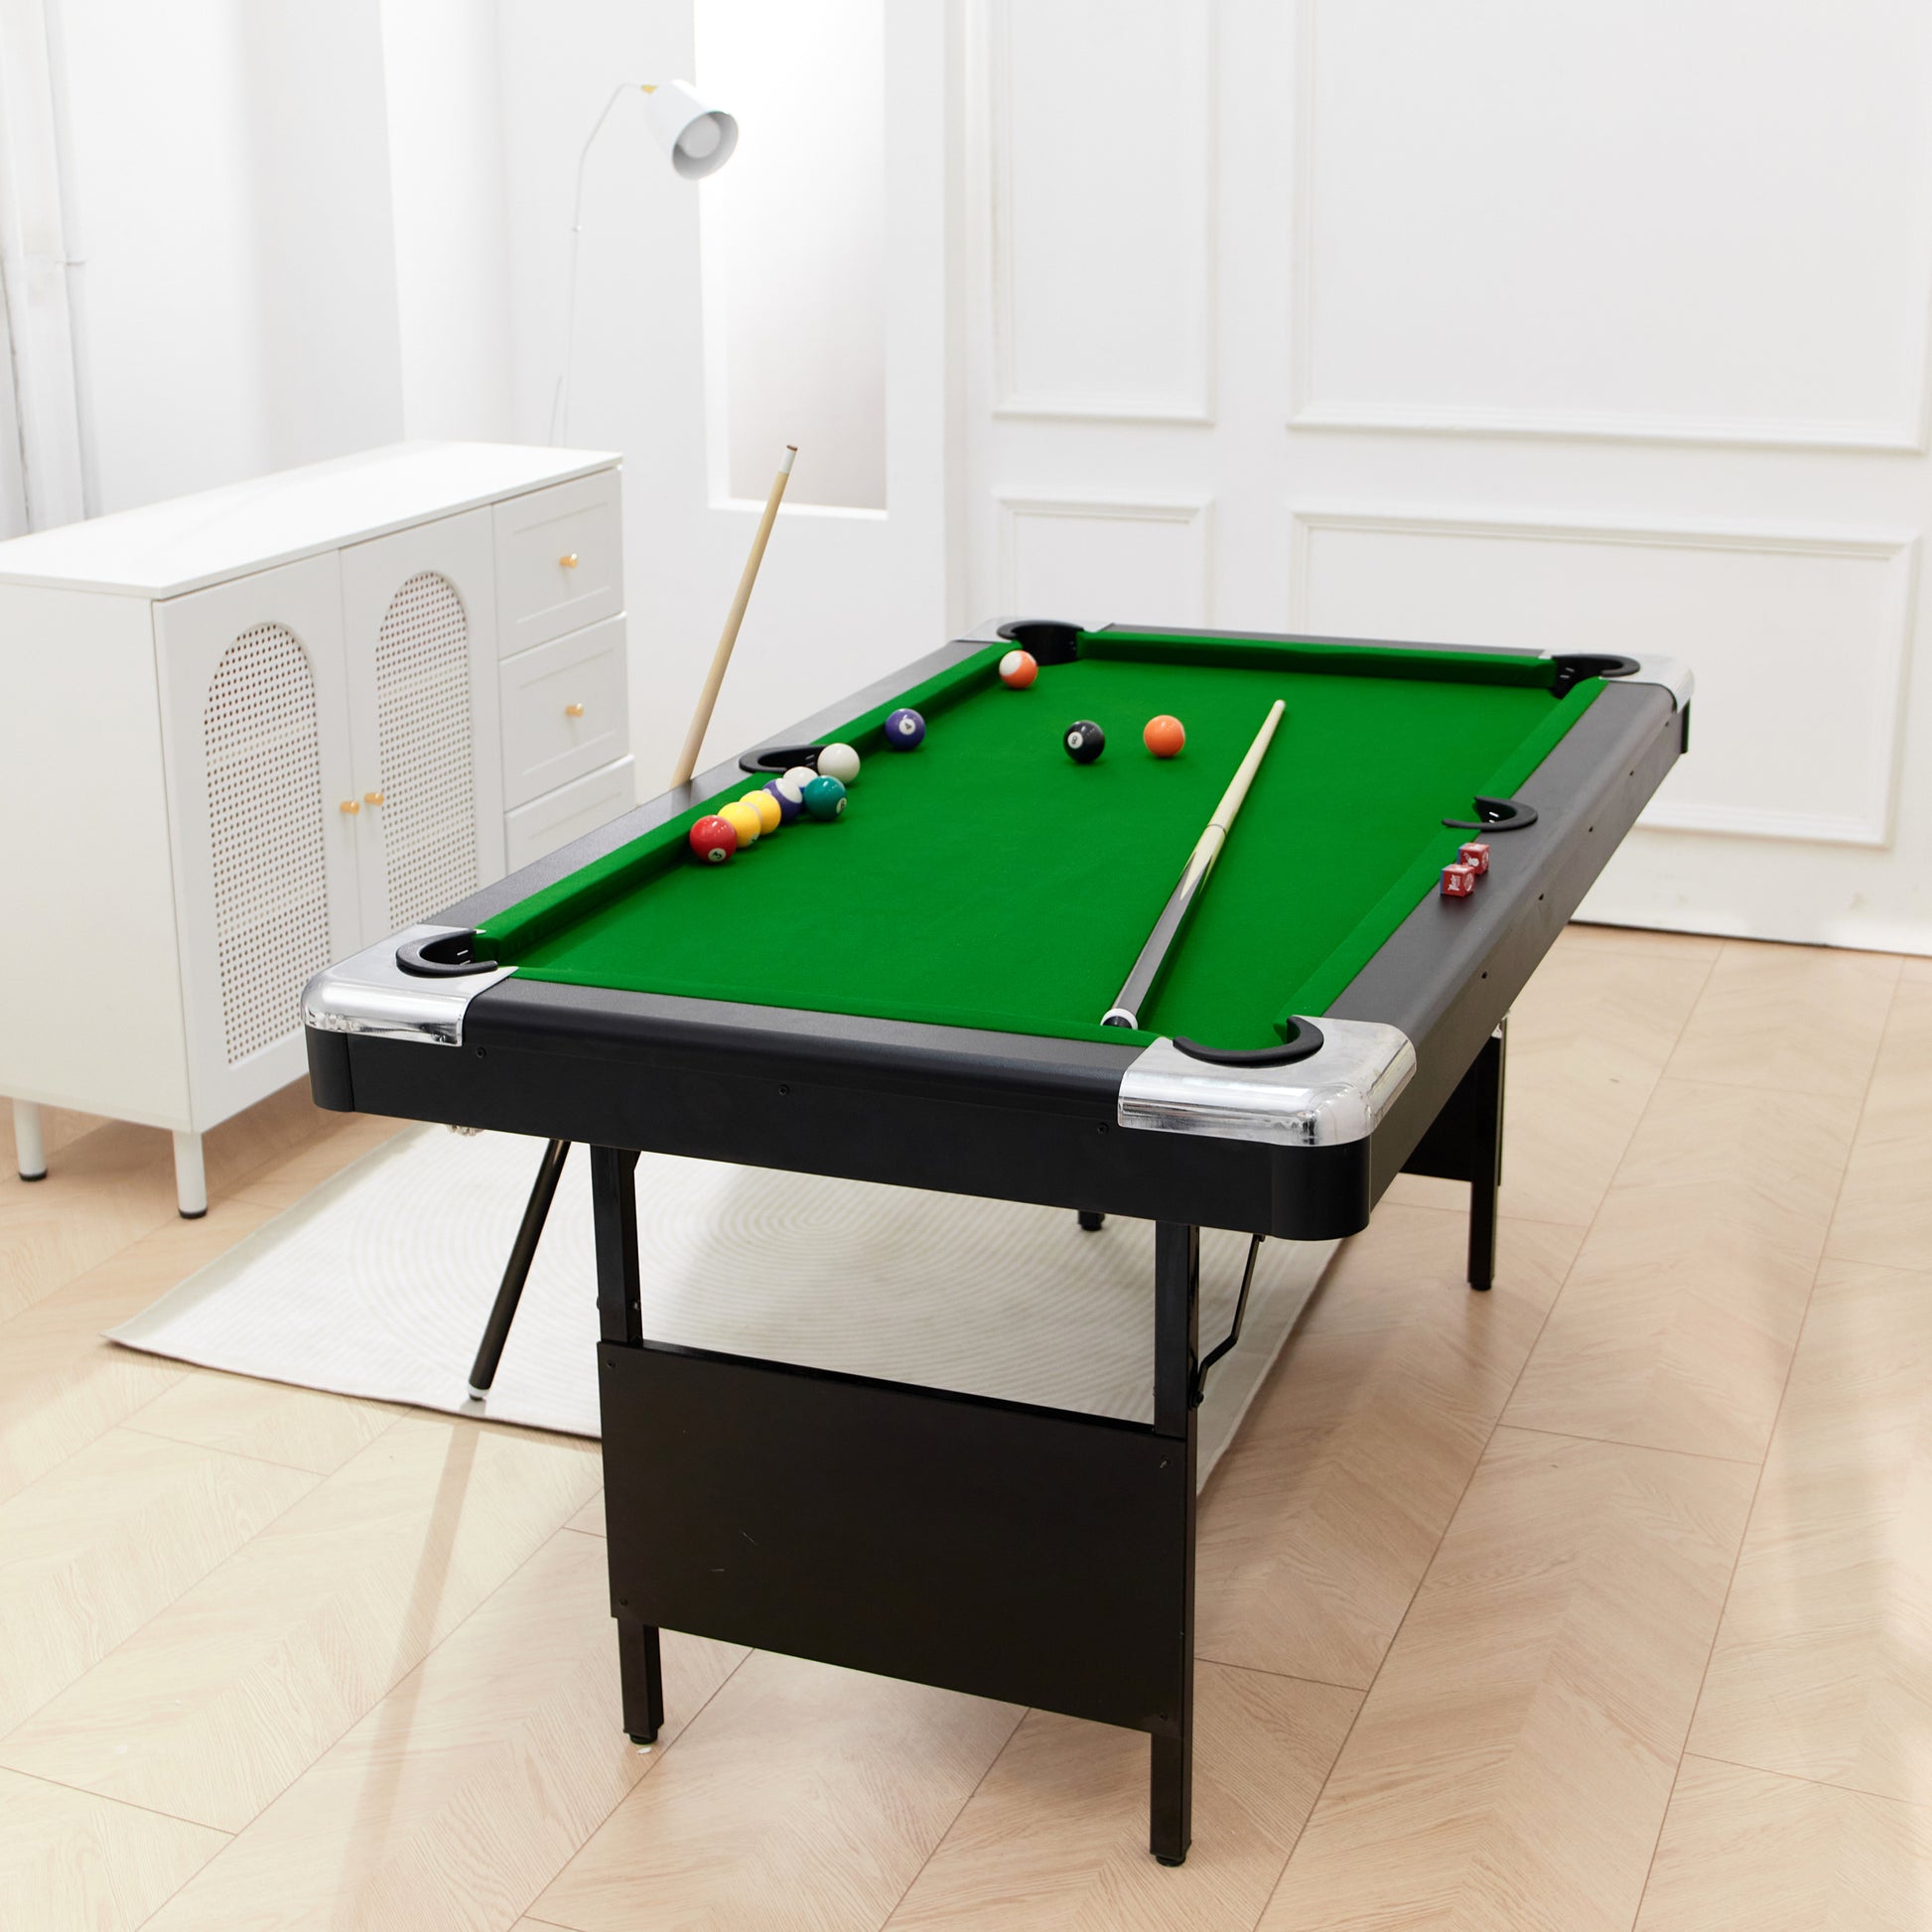 5.5ft Billiard Table, 1.67m pool